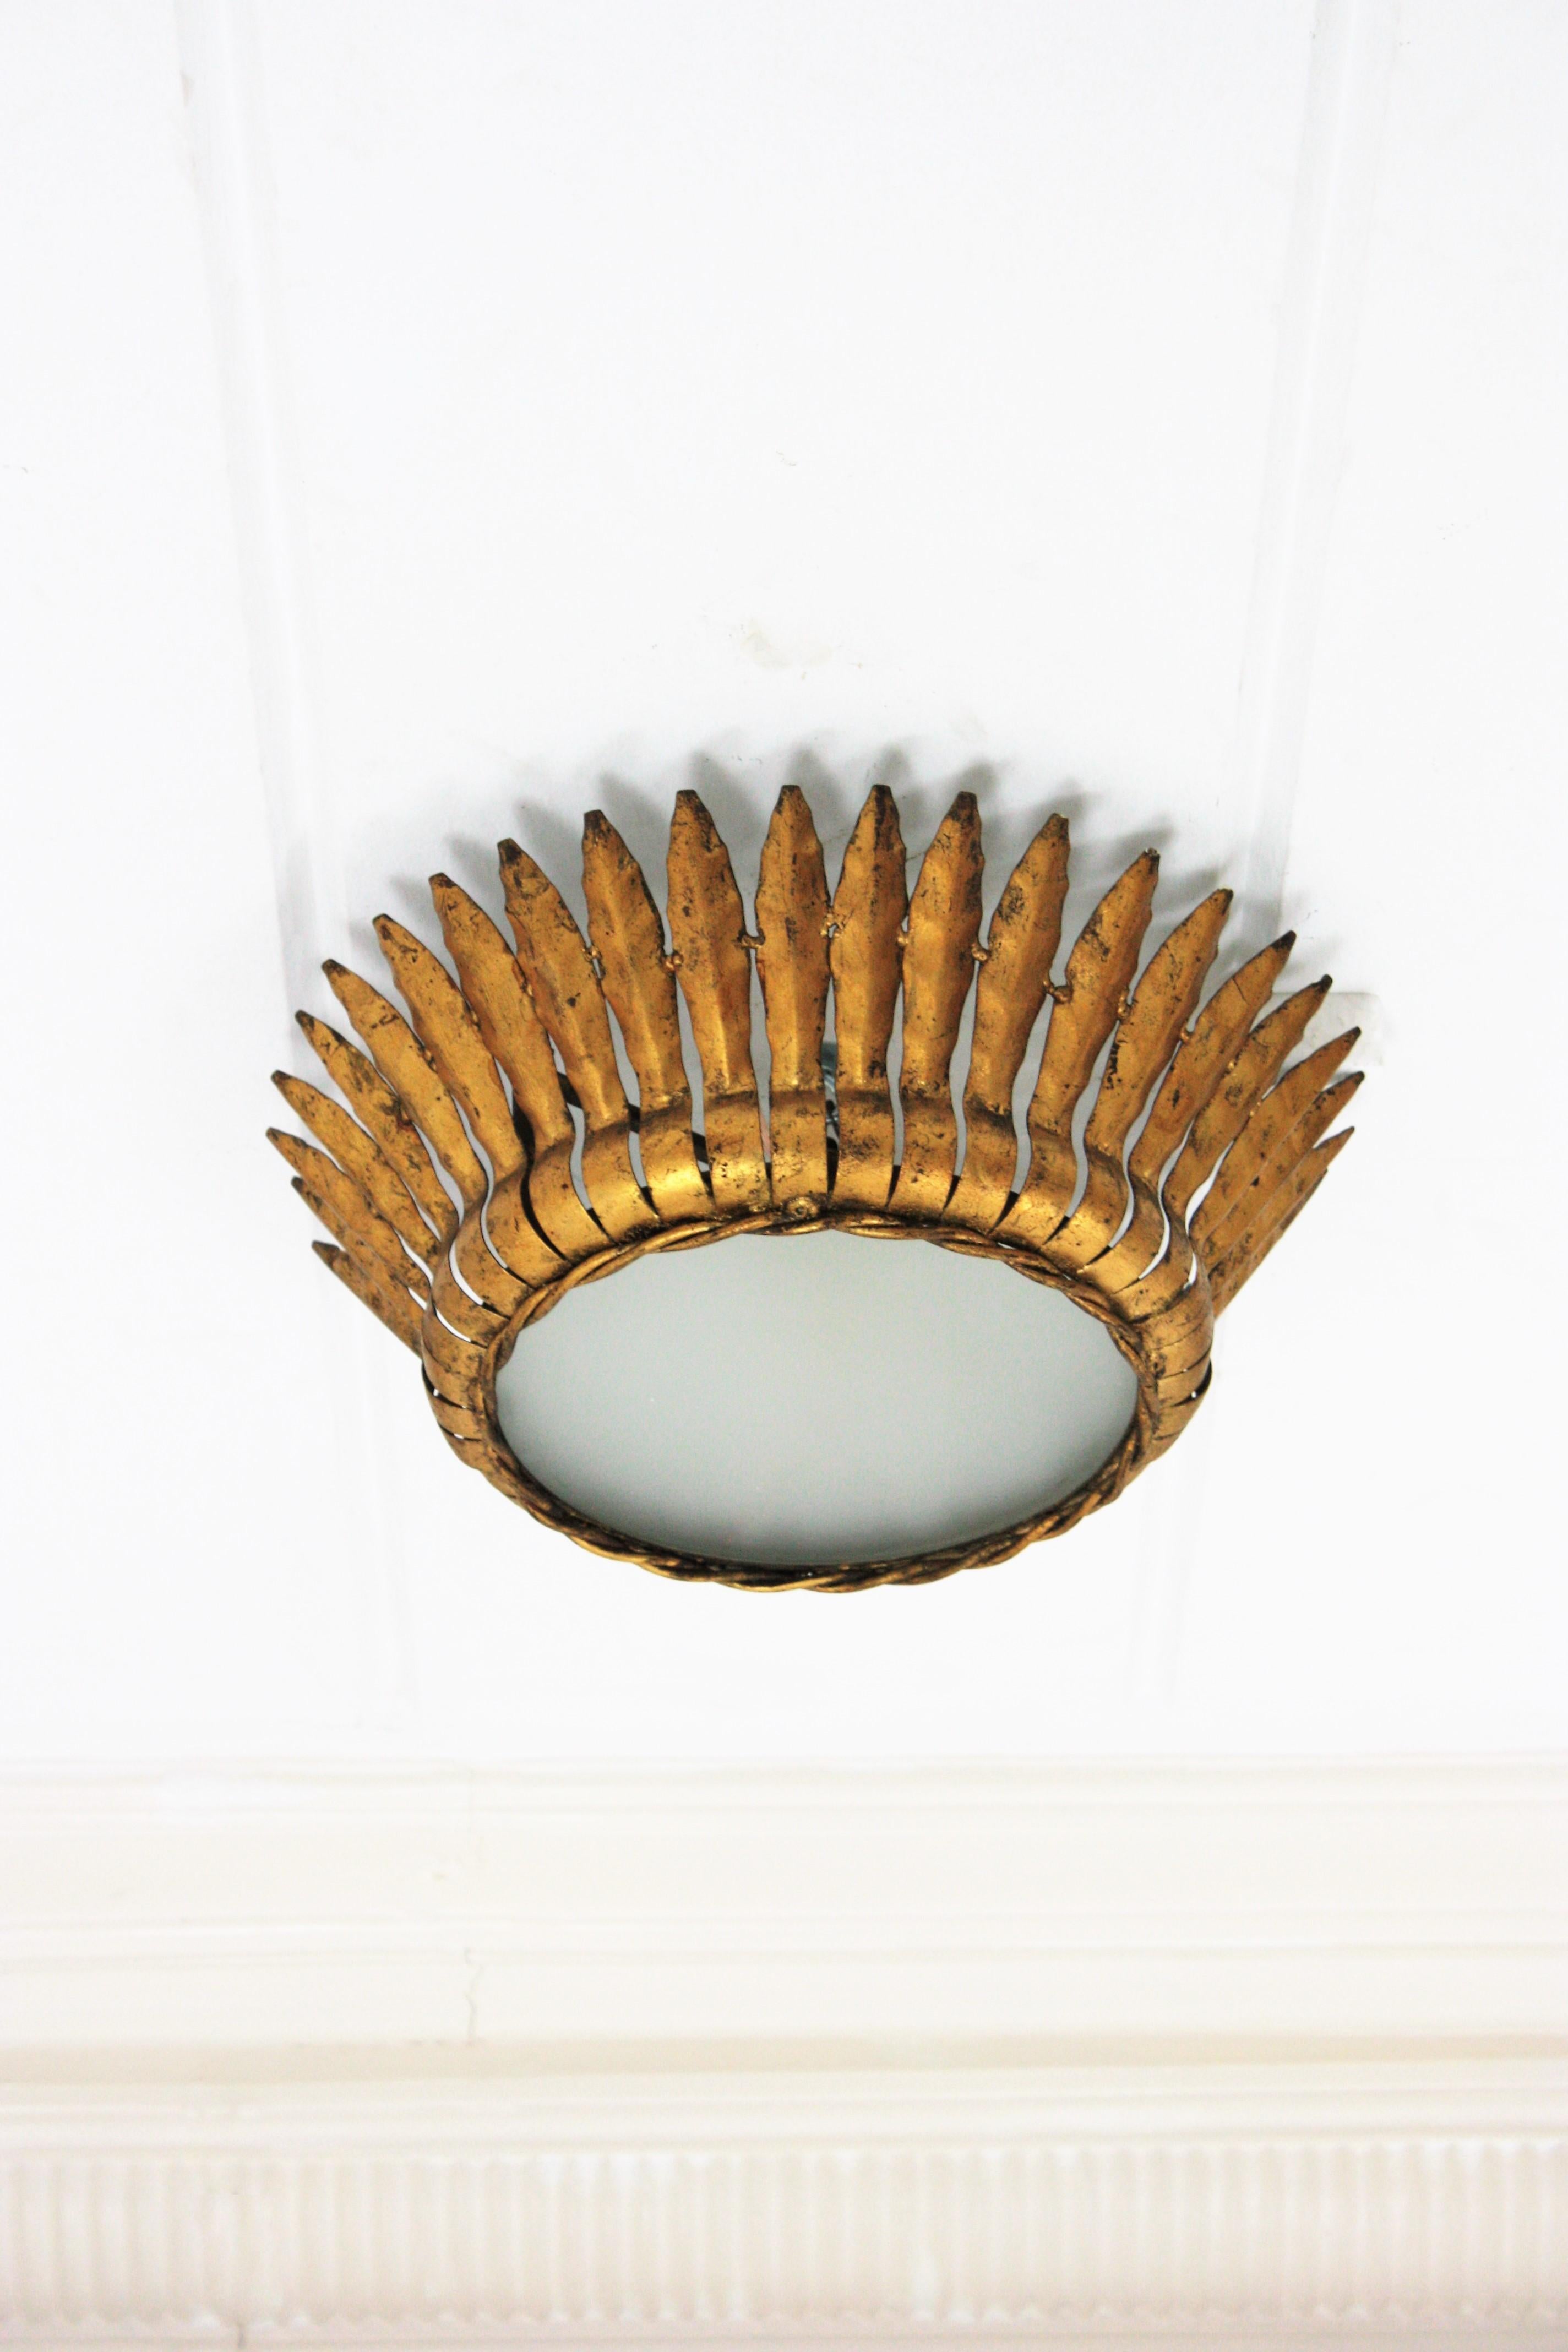 Mirror Pair of Crown Sunburst Light Fixtures or Pendants in Gilt Metal, 1950s